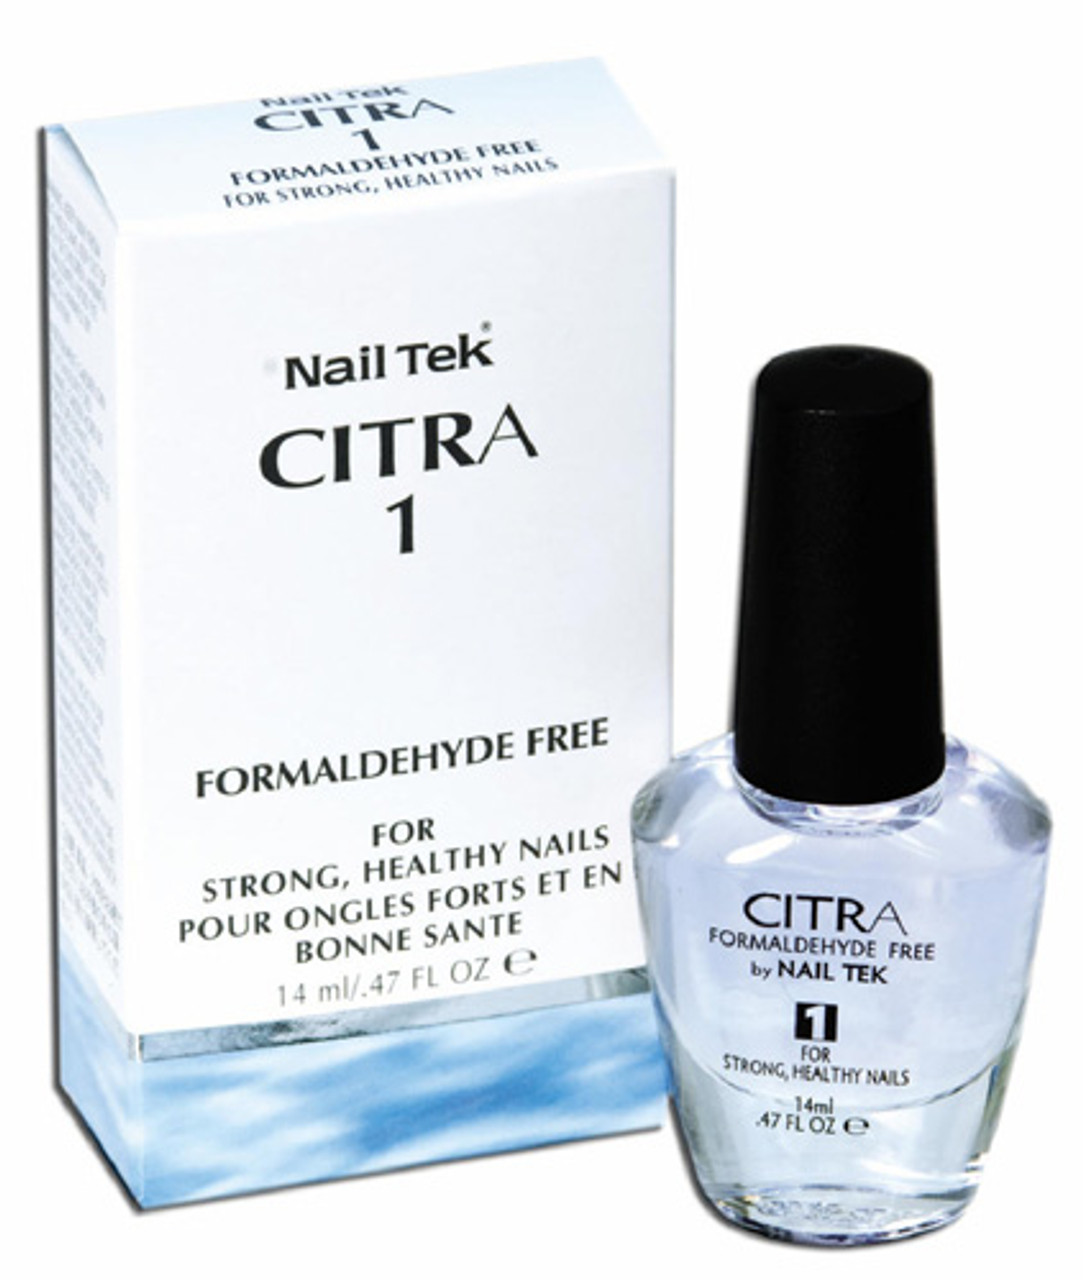 Nail Tek CITRA 1 For Strong Healthy Nails - .5oz